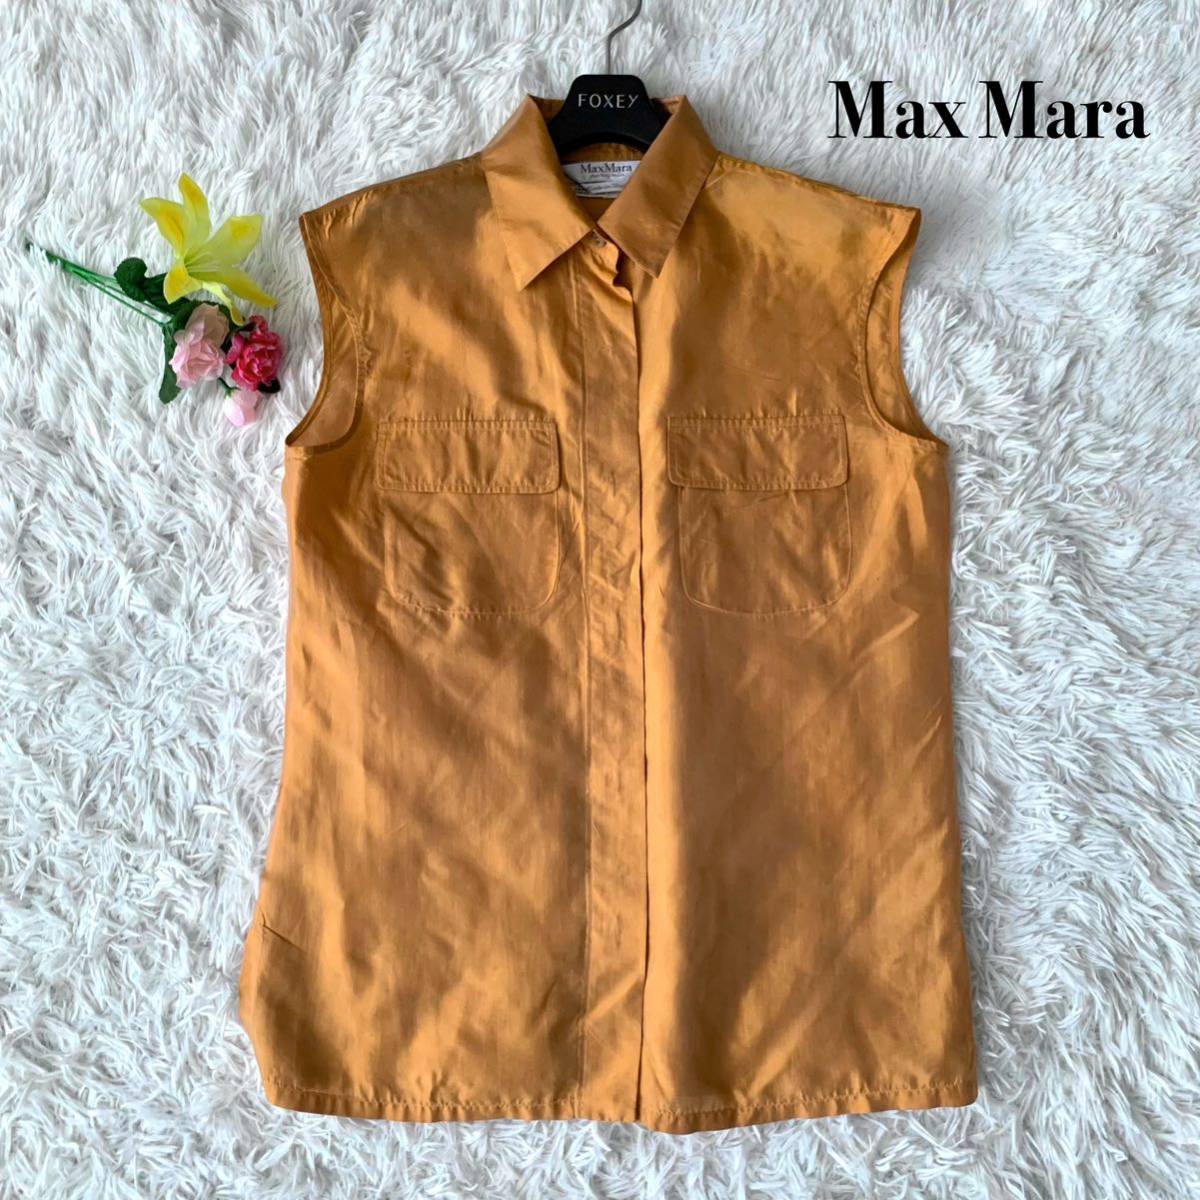 【美品】Max Mara マックスマーラ シャツ ブラウス シンプル フォーマル 美シルエット シルク 絹 オレンジ 橙色 42サイズ XLサイズ相当